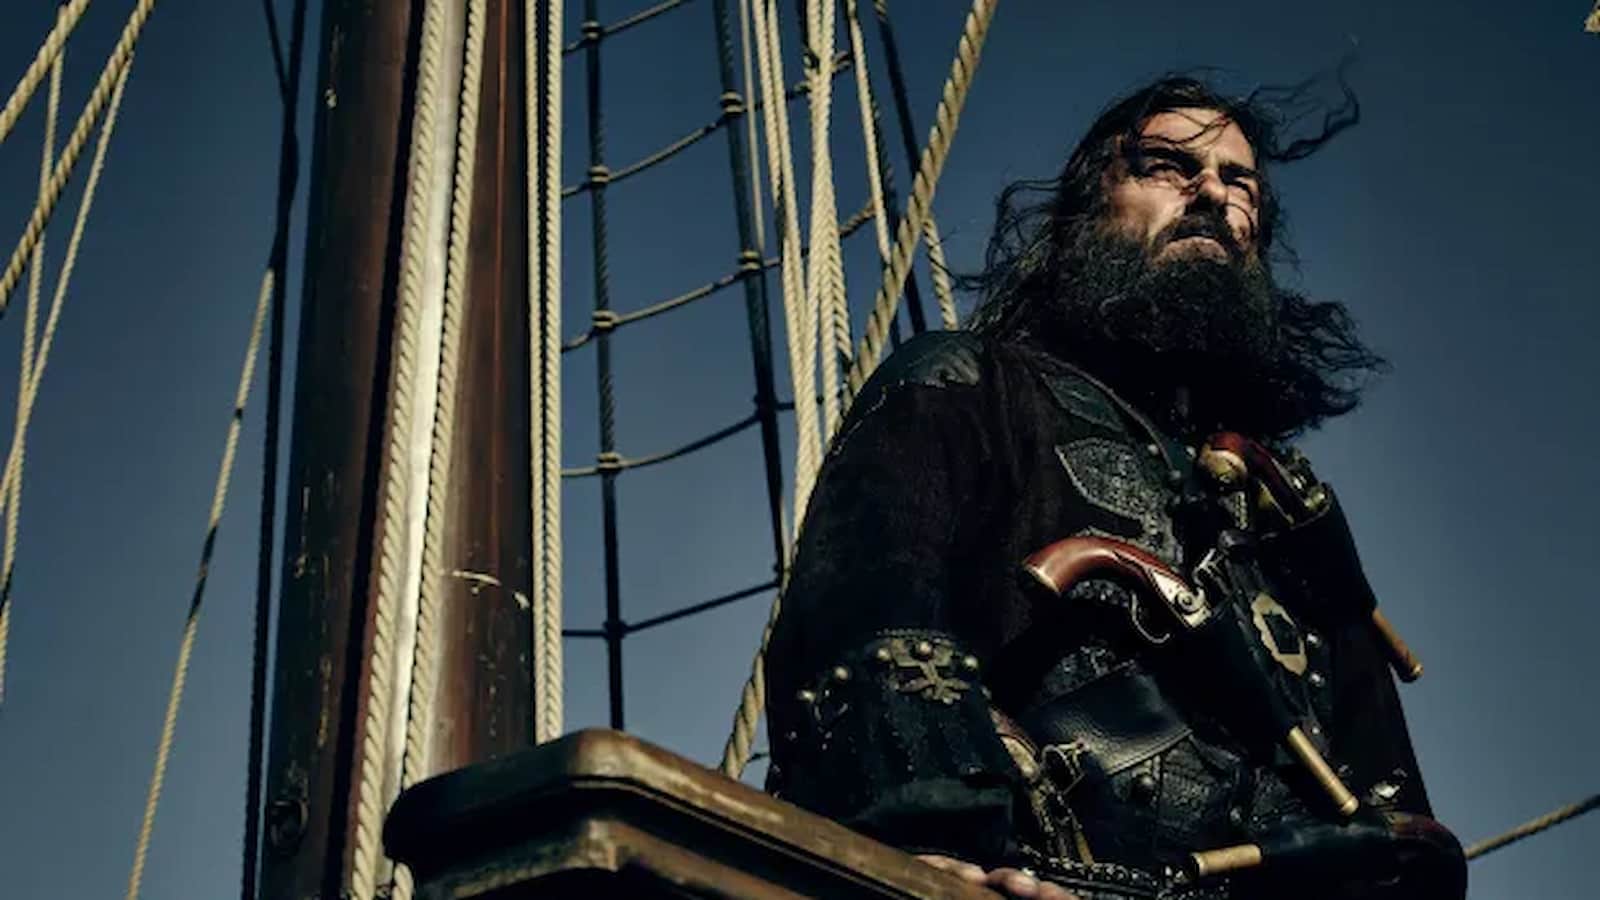 Blackbeard, who is Blackbeard, Blackbeard pirate